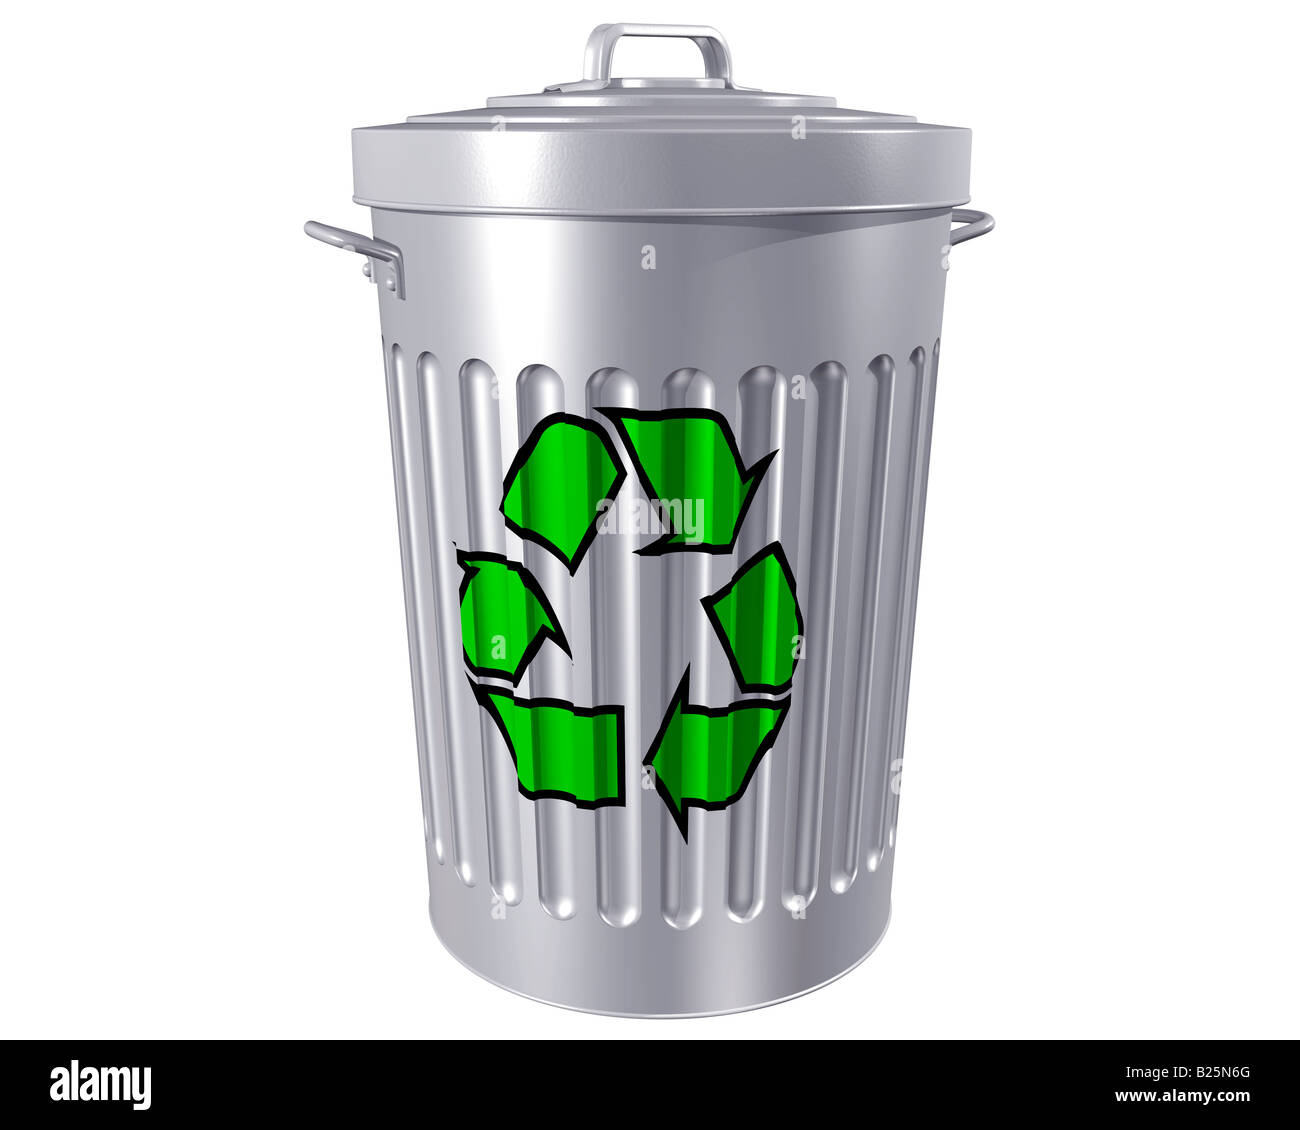 Illustration d'une poubelle traditionnelle avec un rappel à recycler Banque D'Images